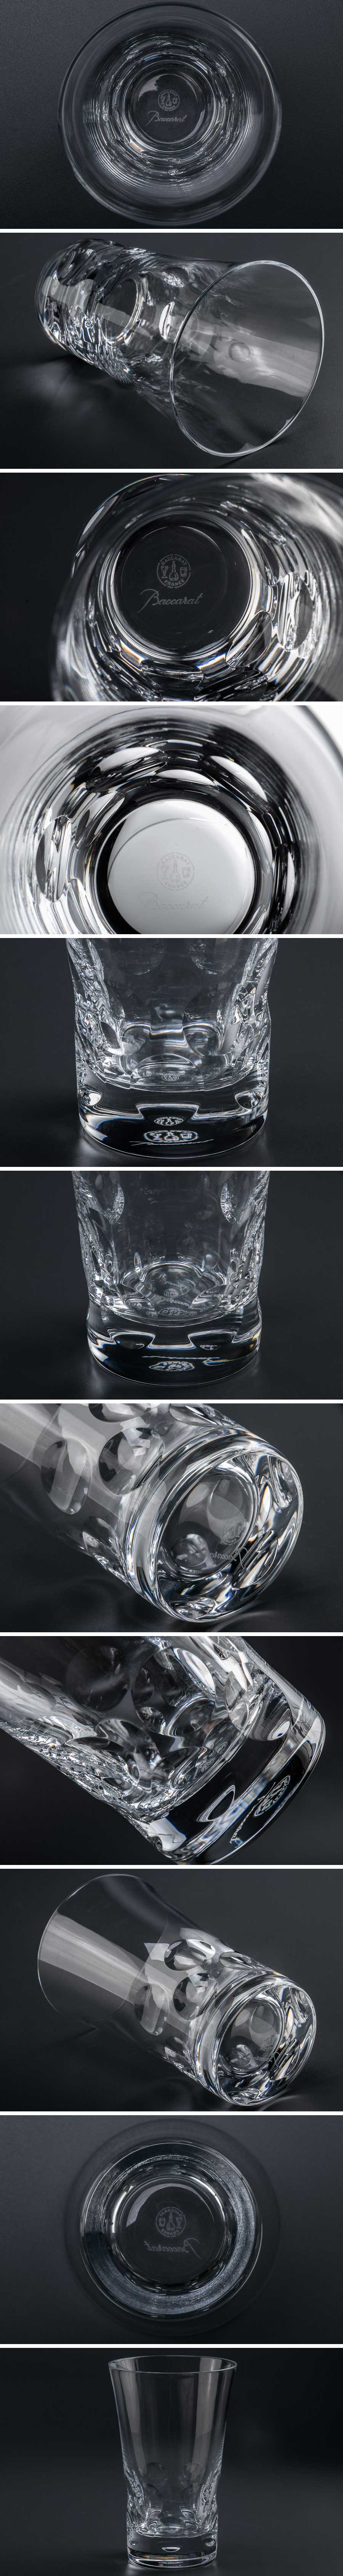 販売販売『 Baccarat バカラ ベルーガ ハイボールグラス 7864 』 洋食器 ブランド テーブルウェア クリスタルガラス 工芸ガラス